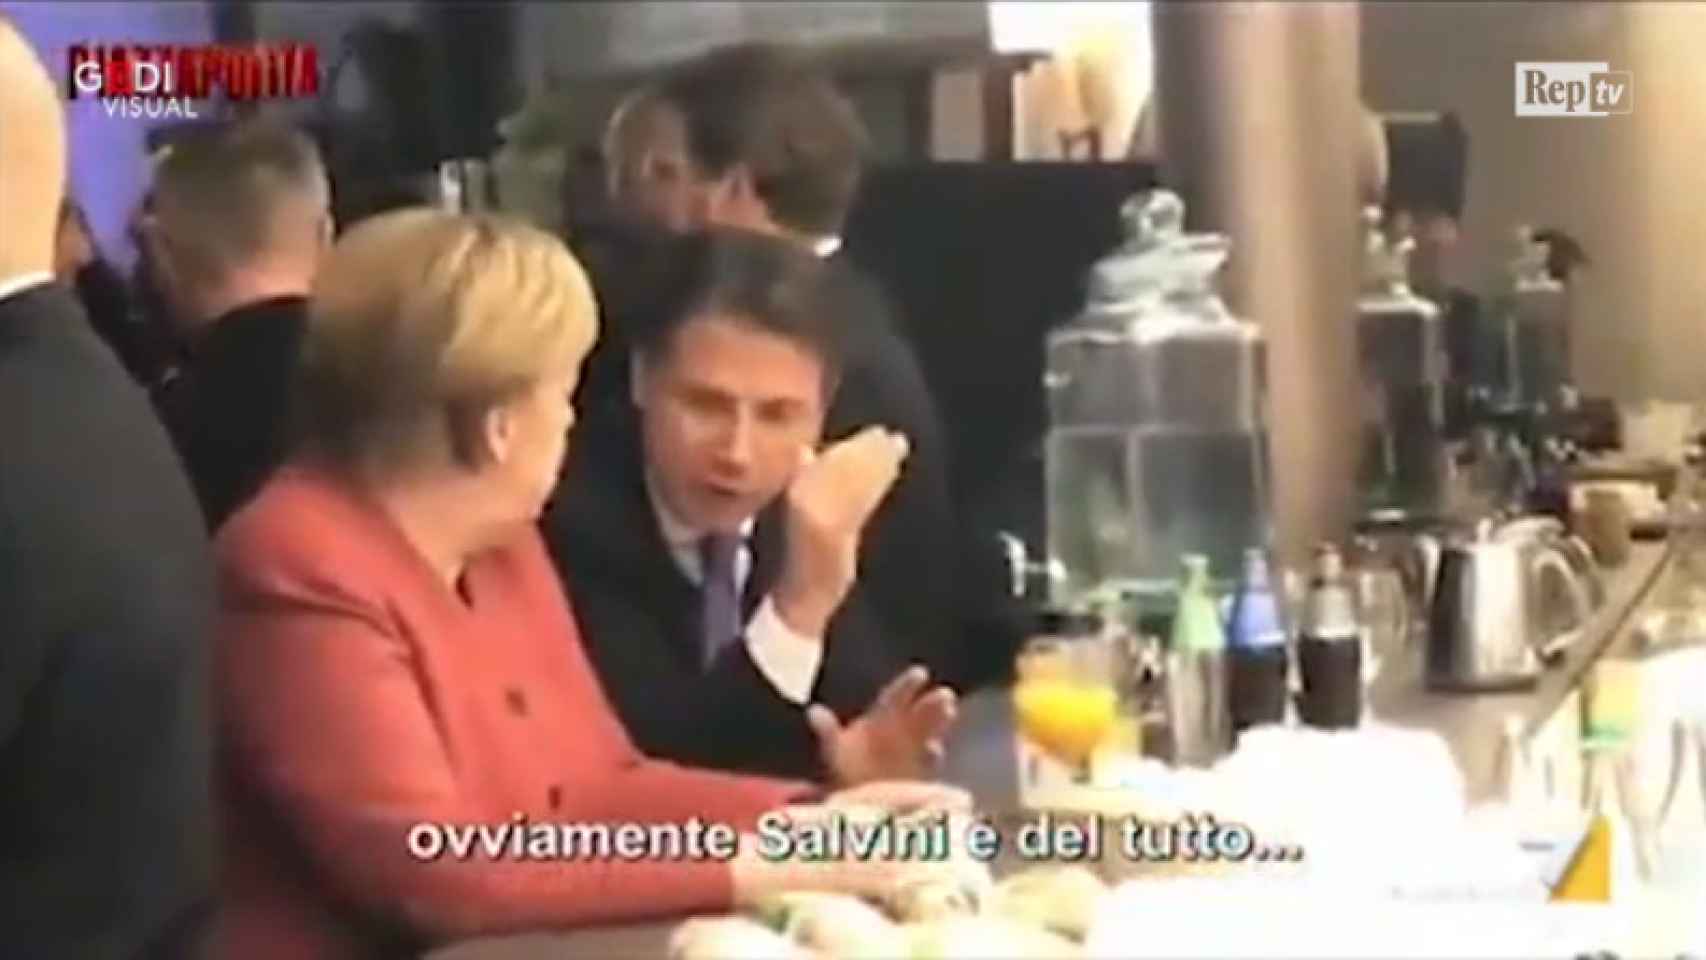 Conte y Merkel durante su conversación filtrada.